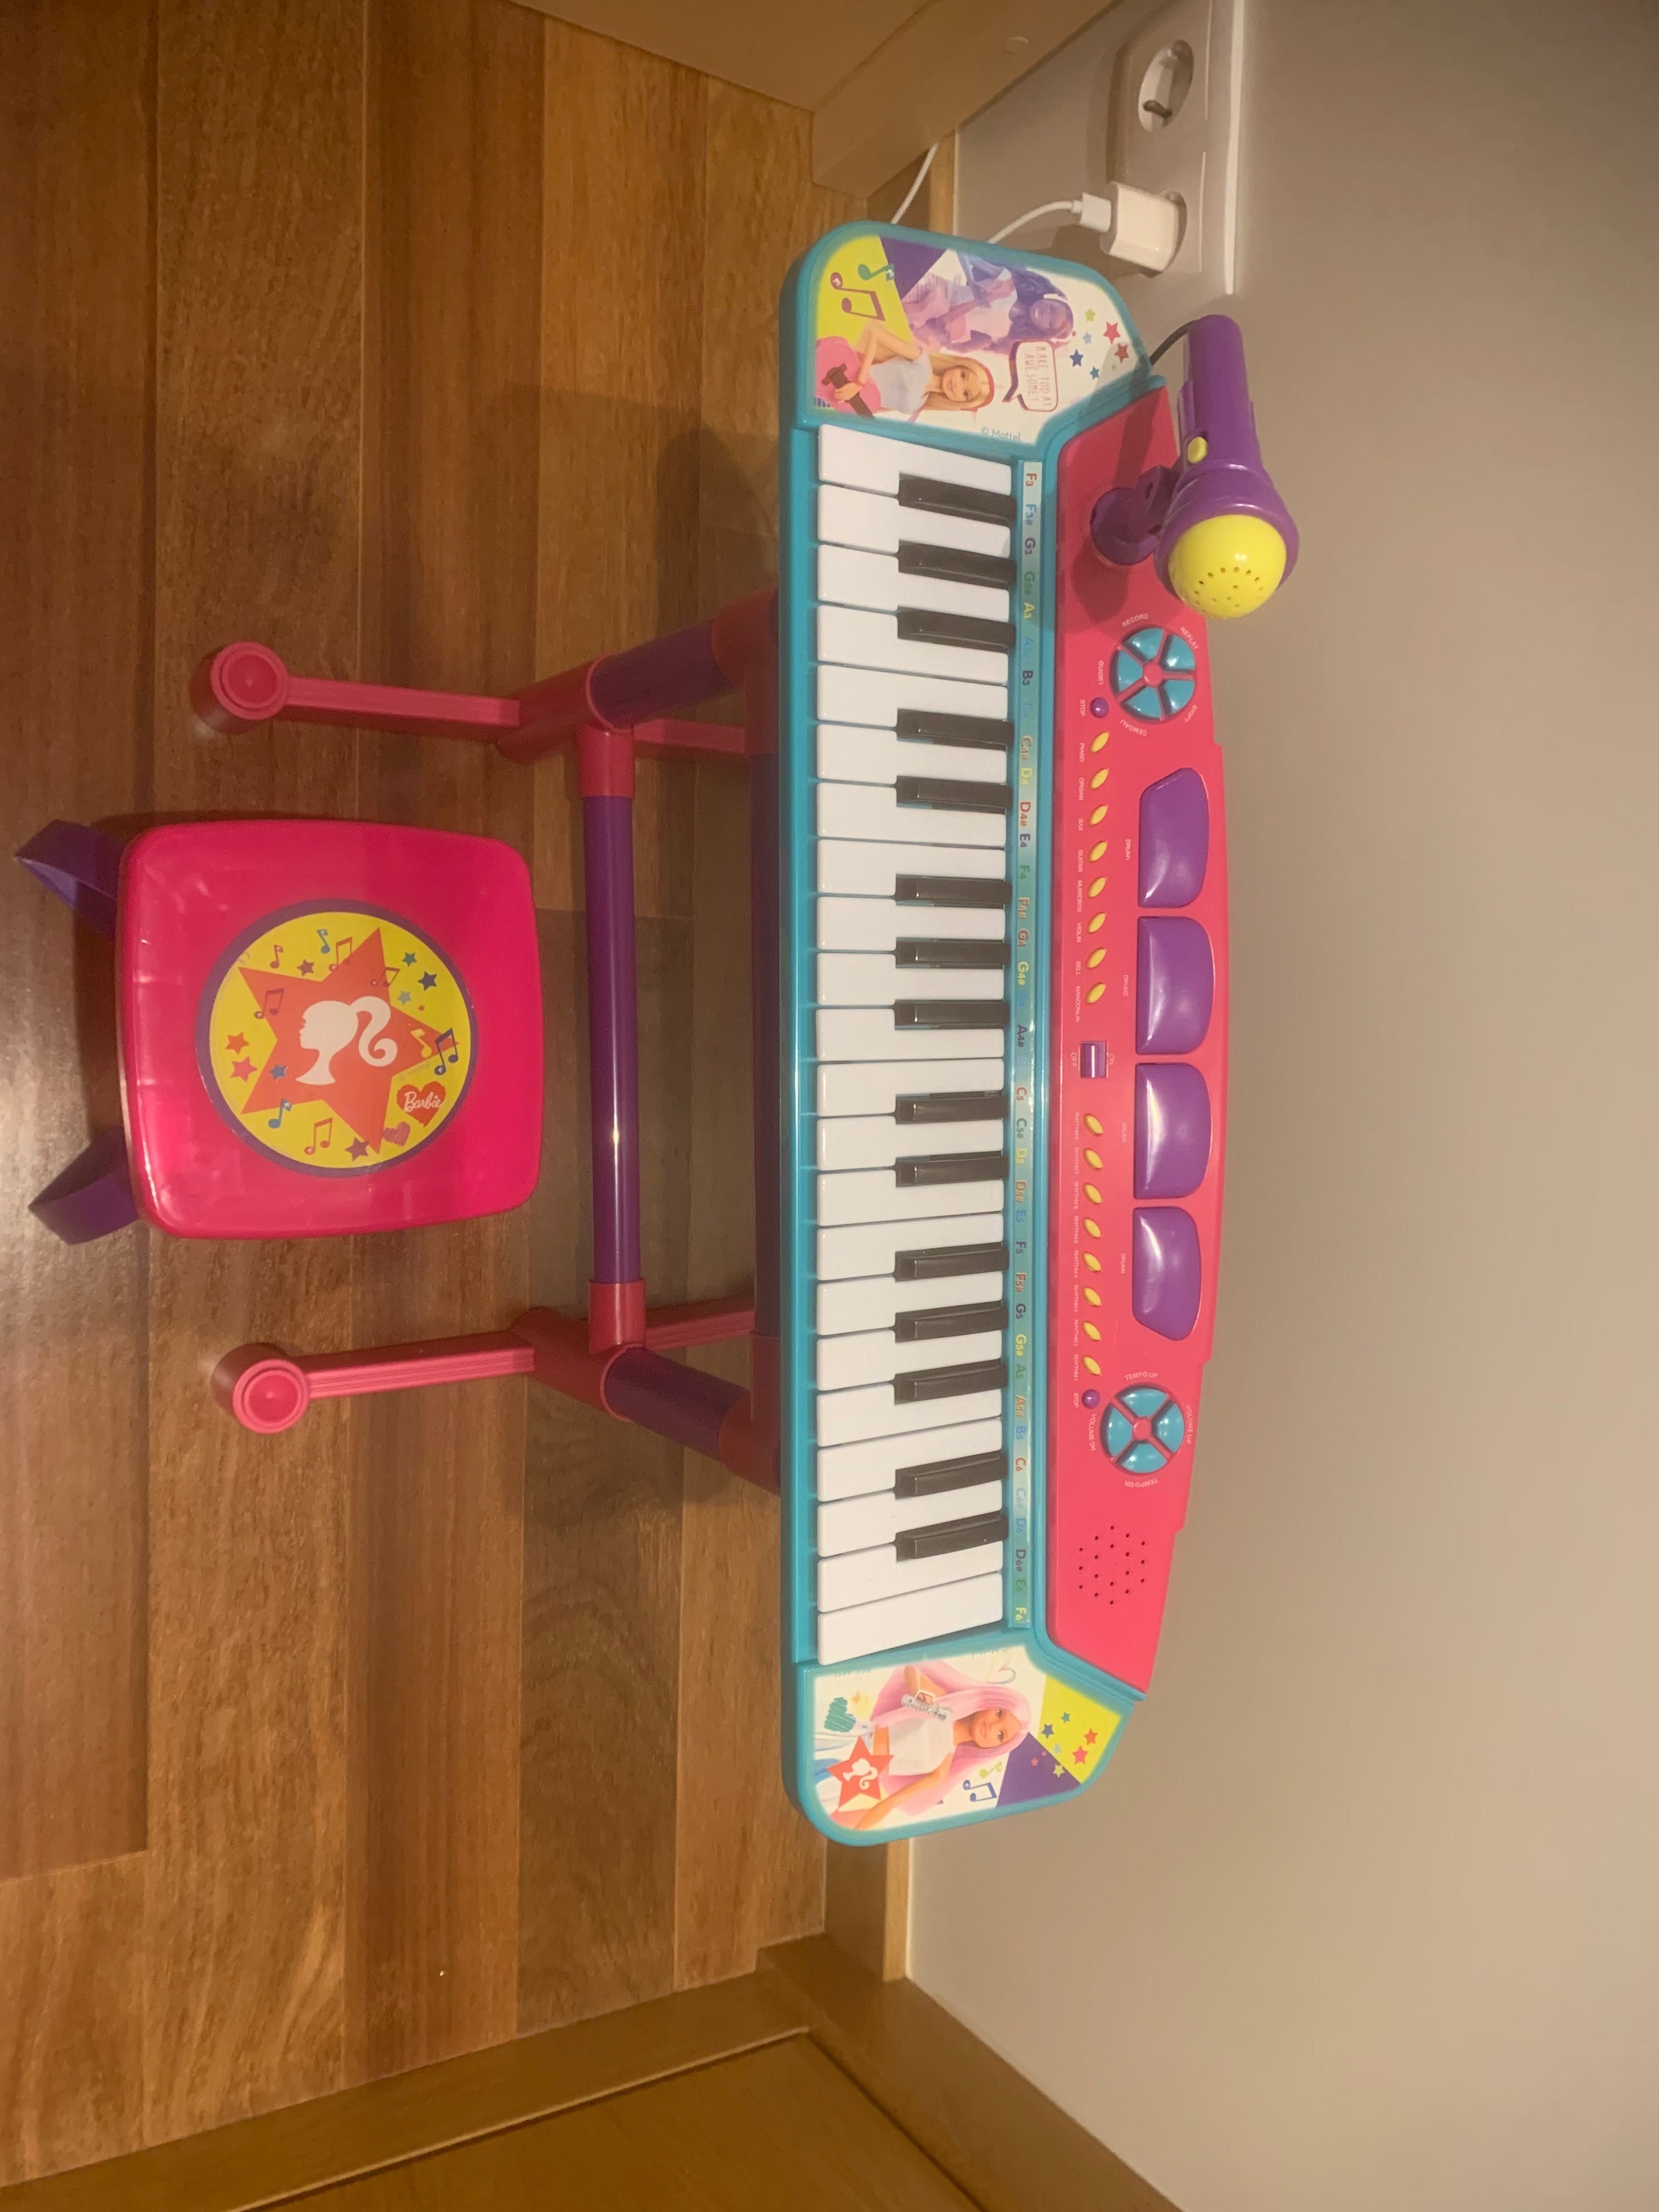 Órgão Eletrónico da Barbie